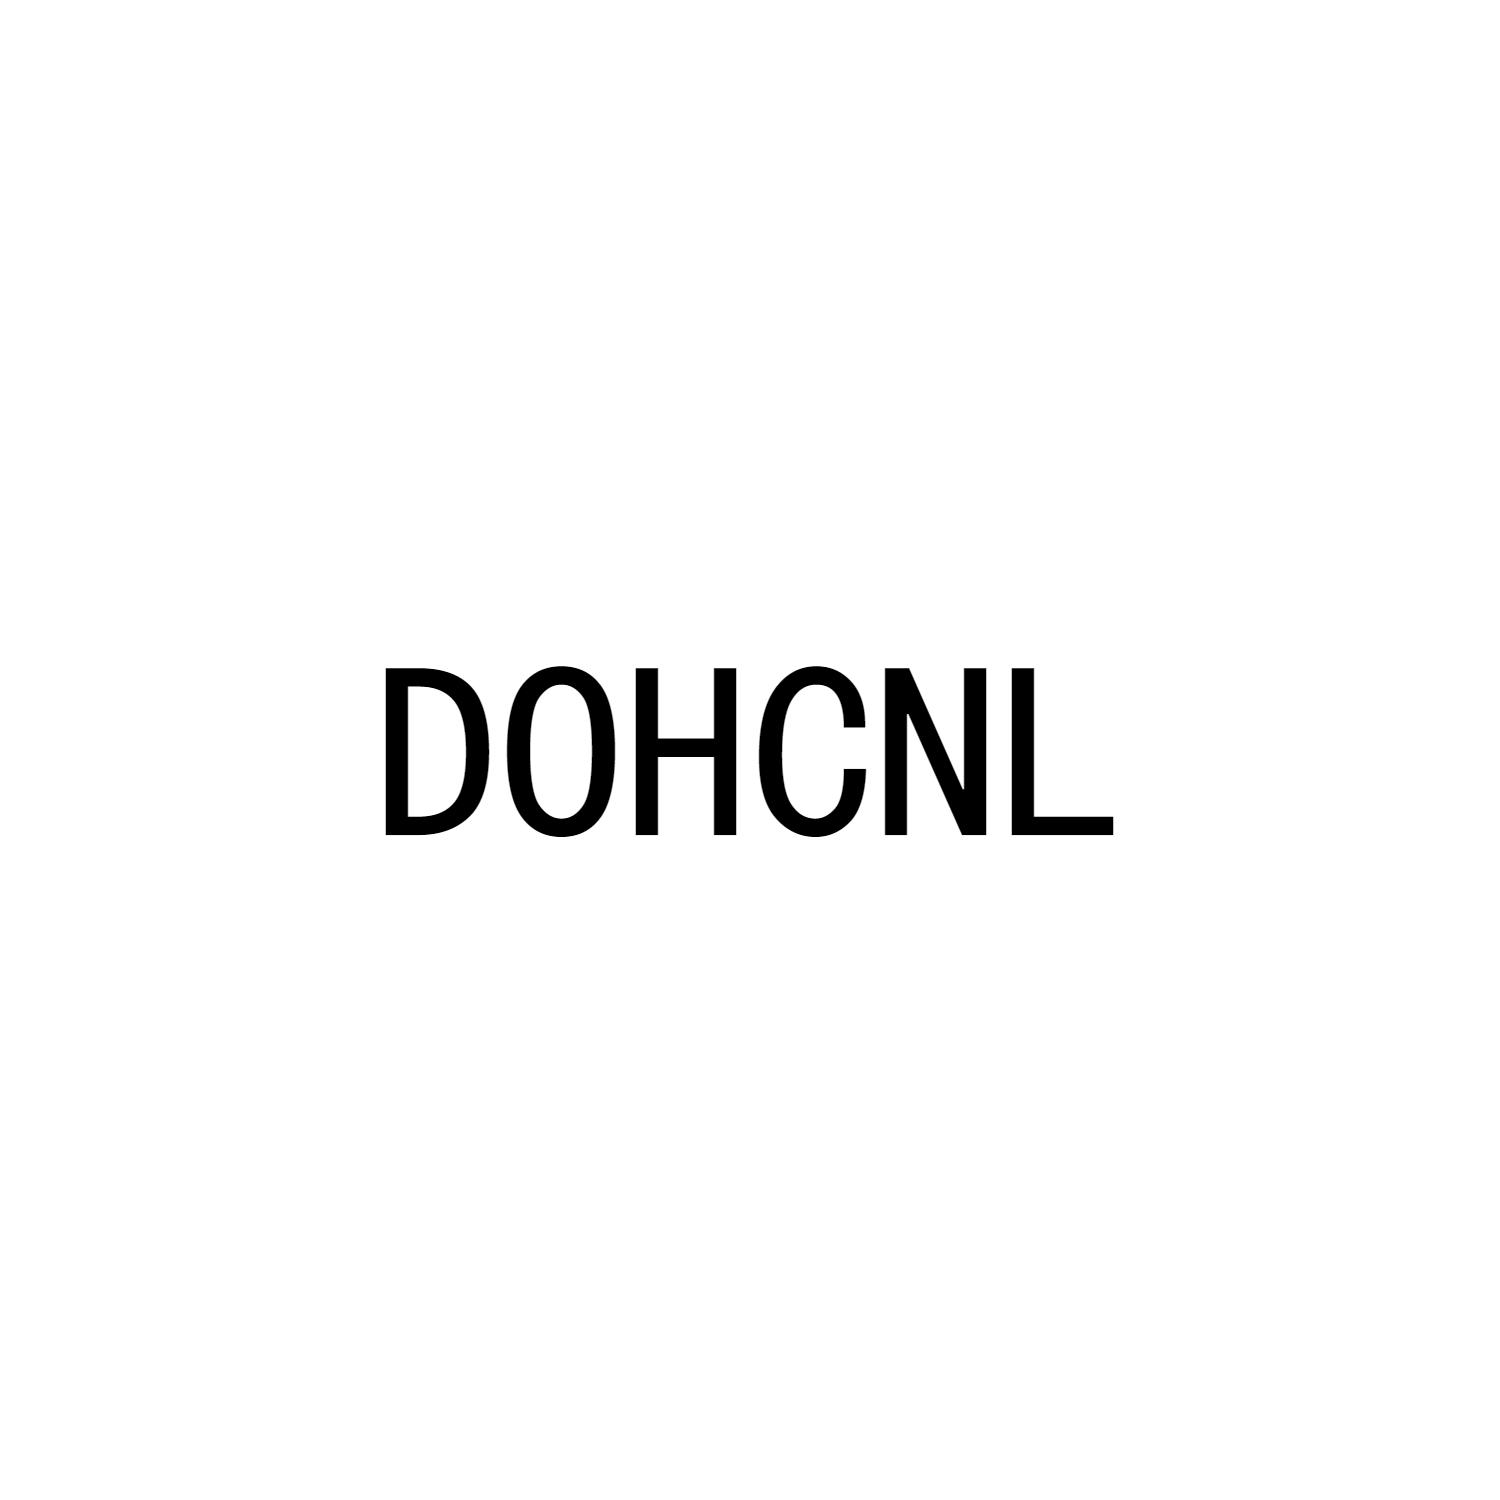 DOHCNL